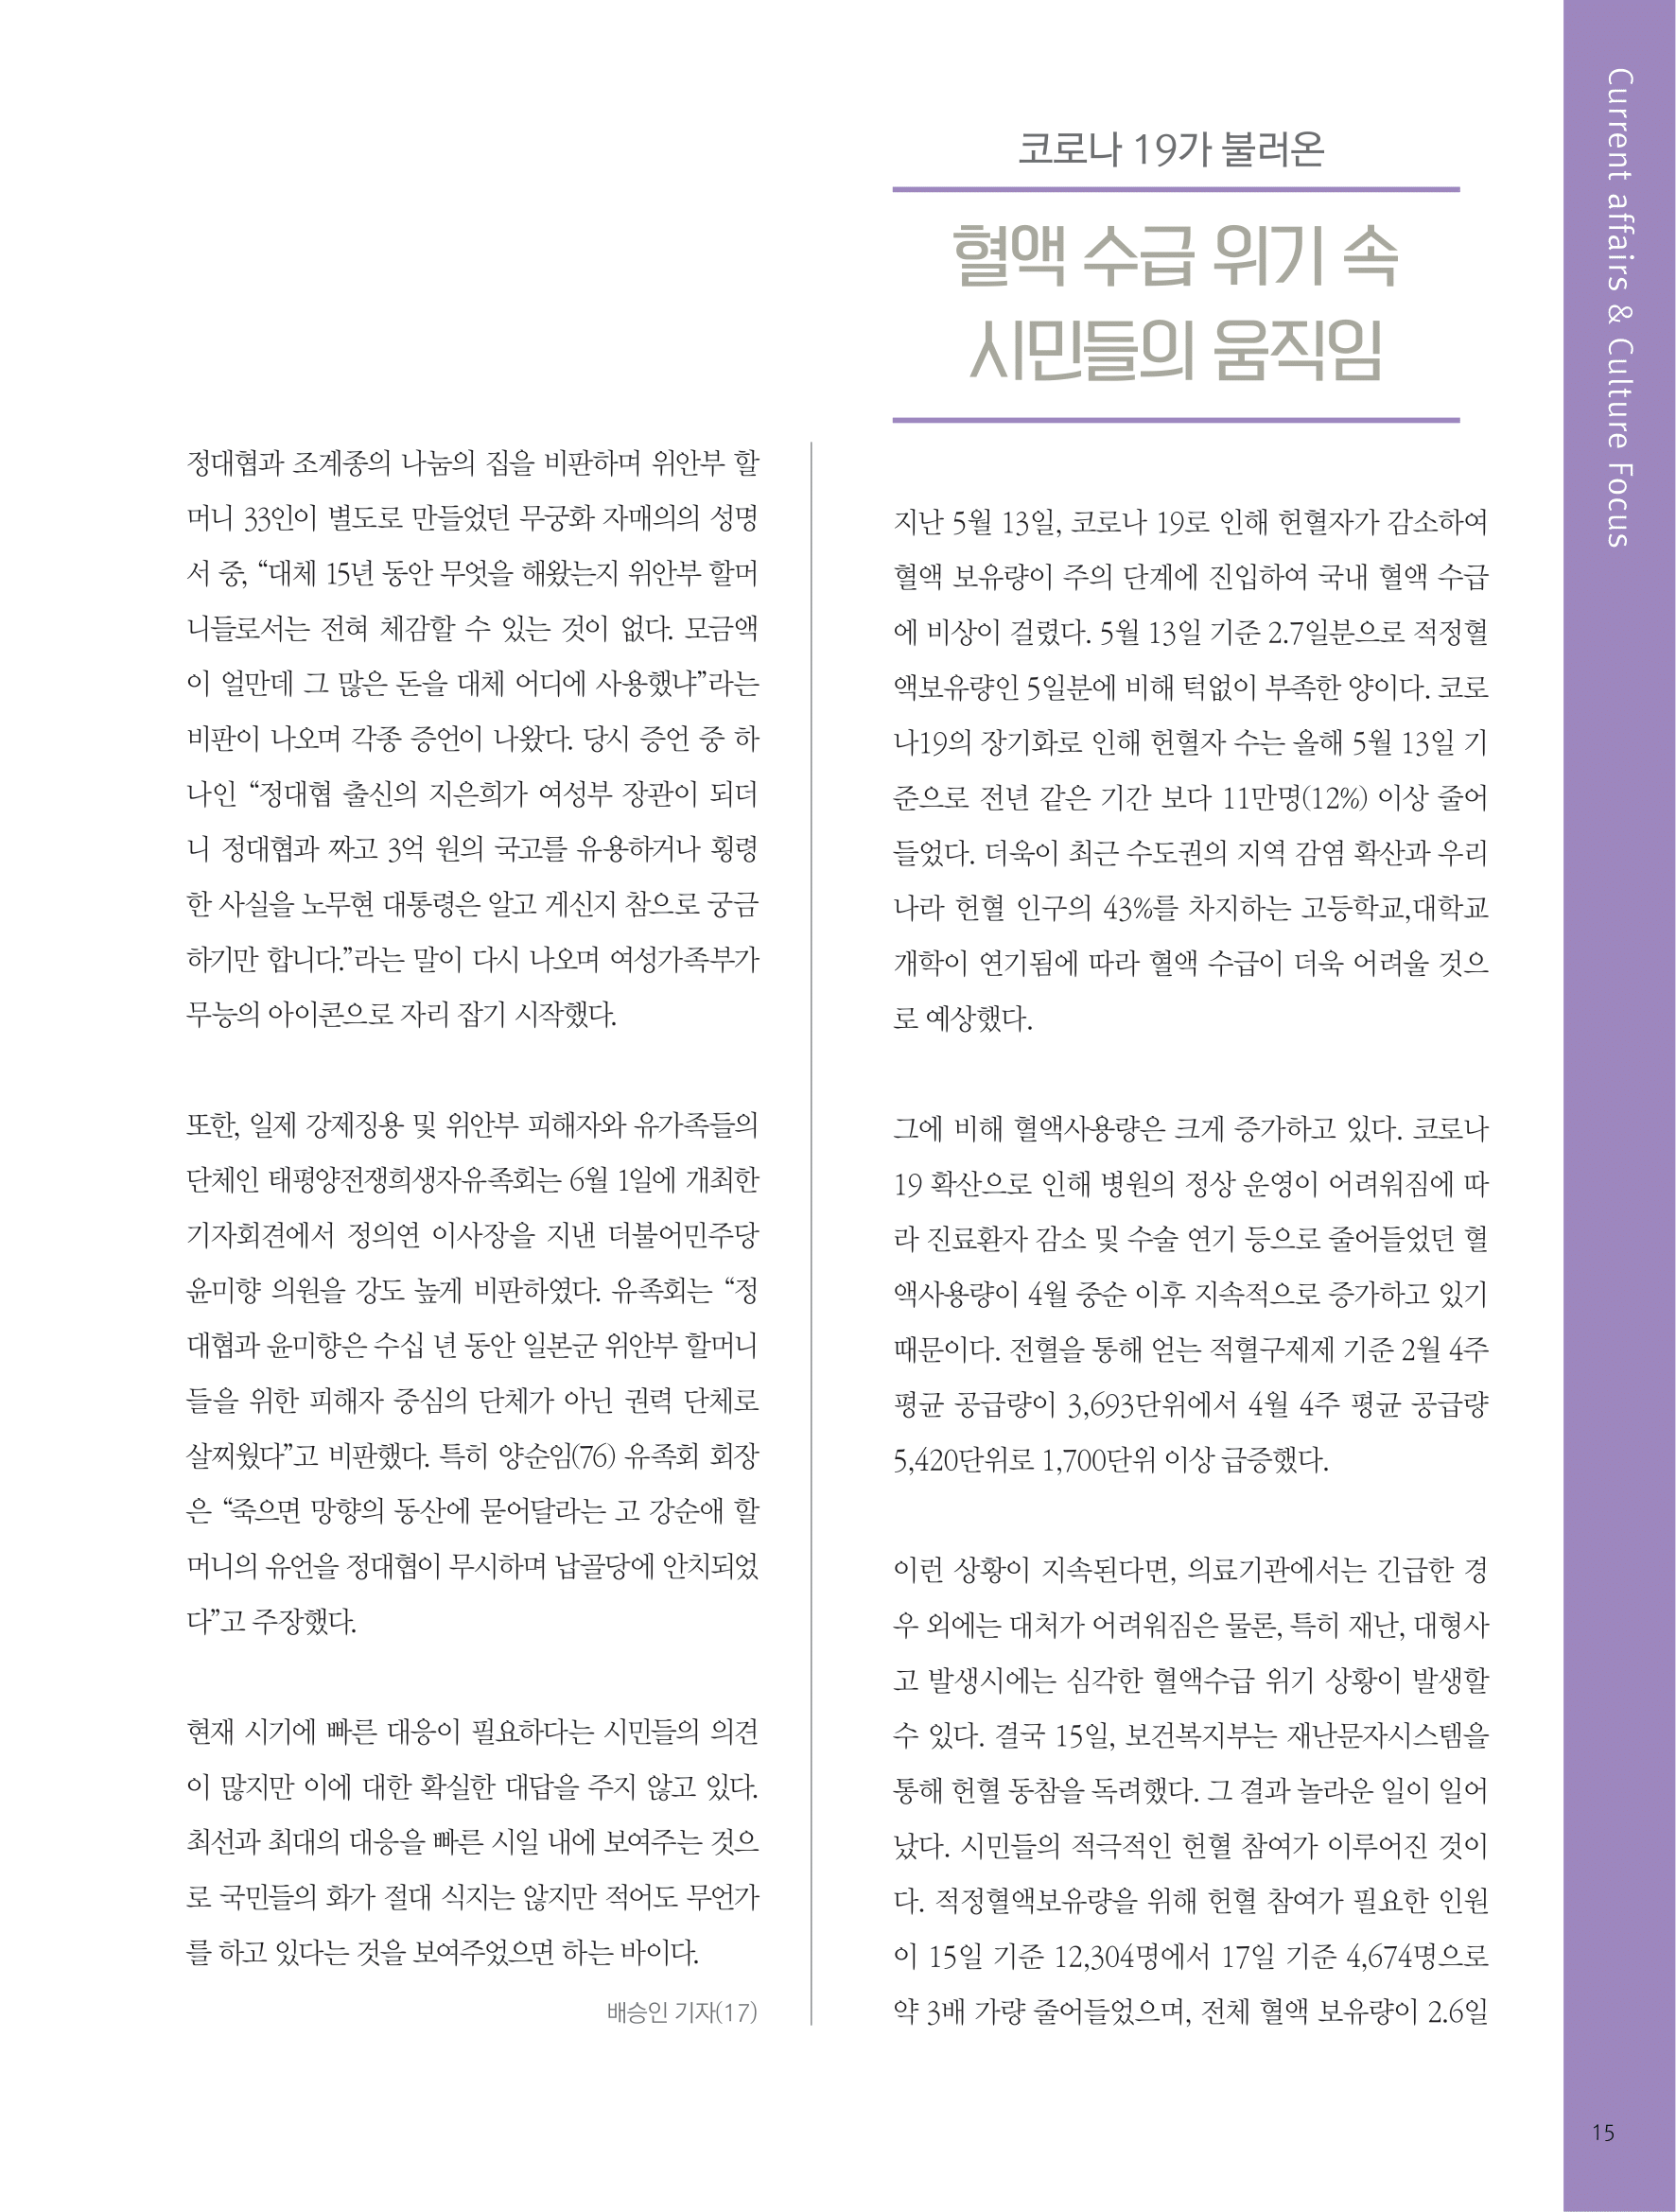 뜻새김 신문 75호 13